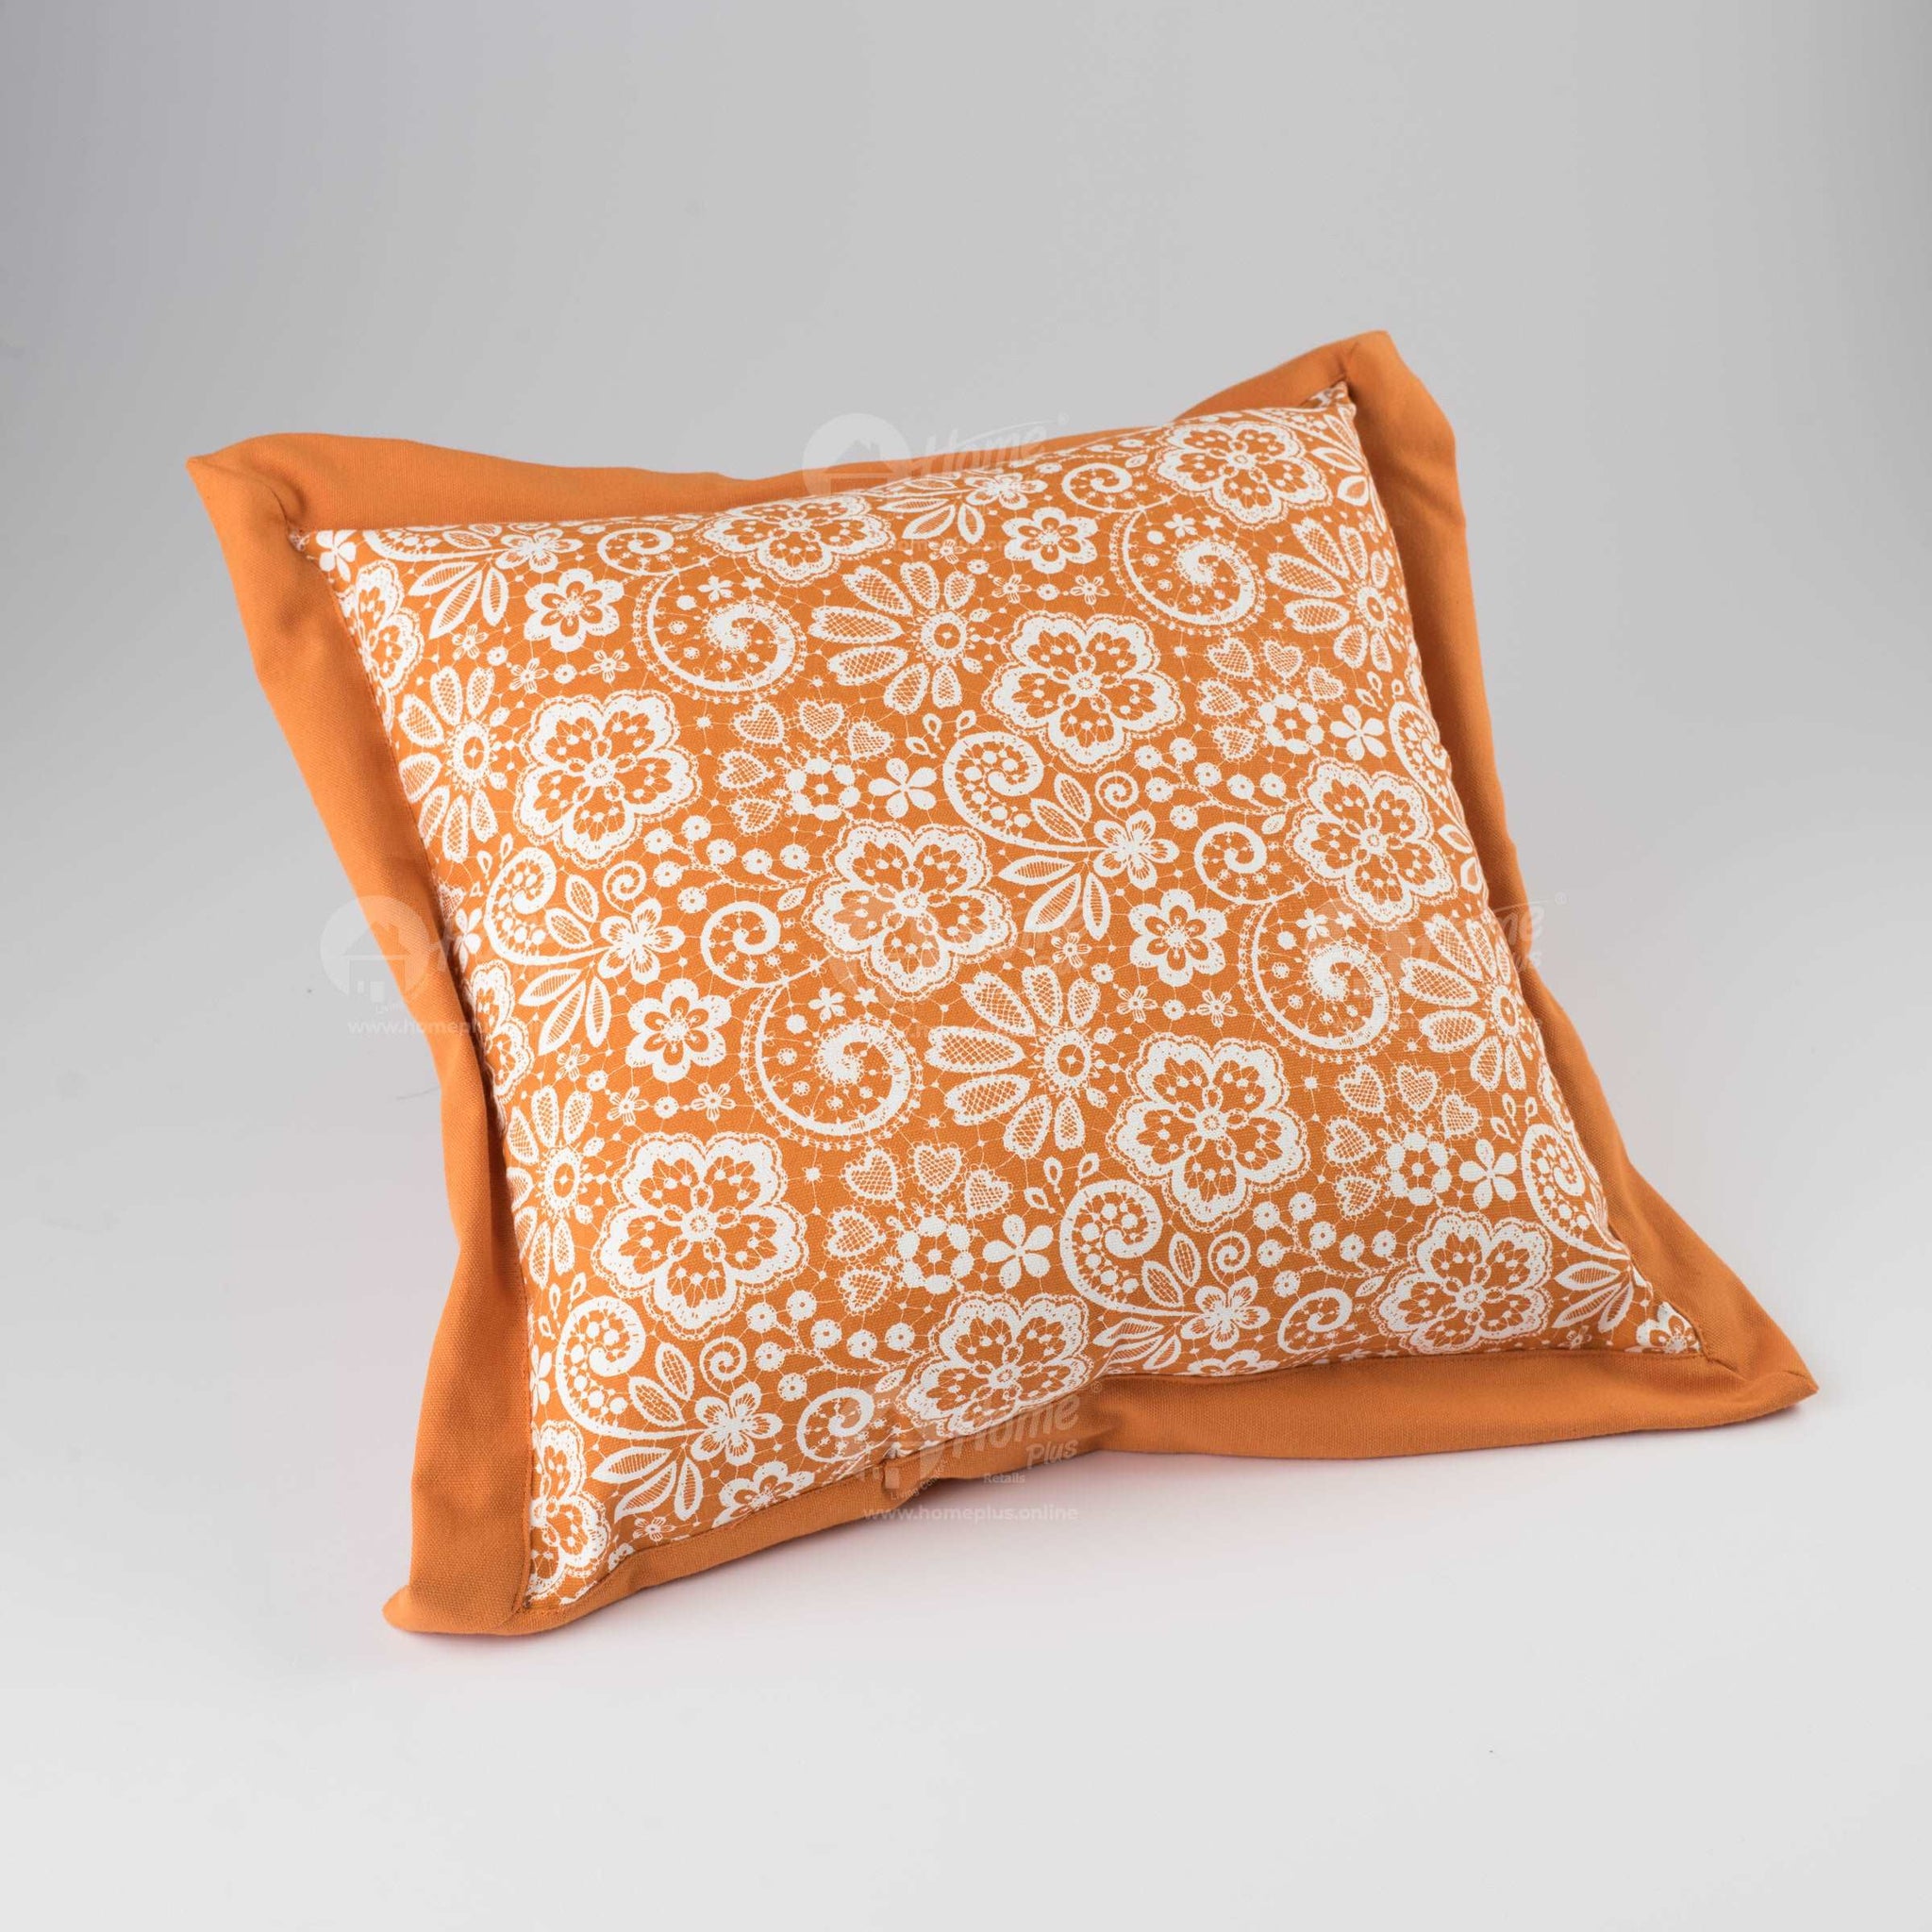 Flange Cushion - Lace Burnt Orange